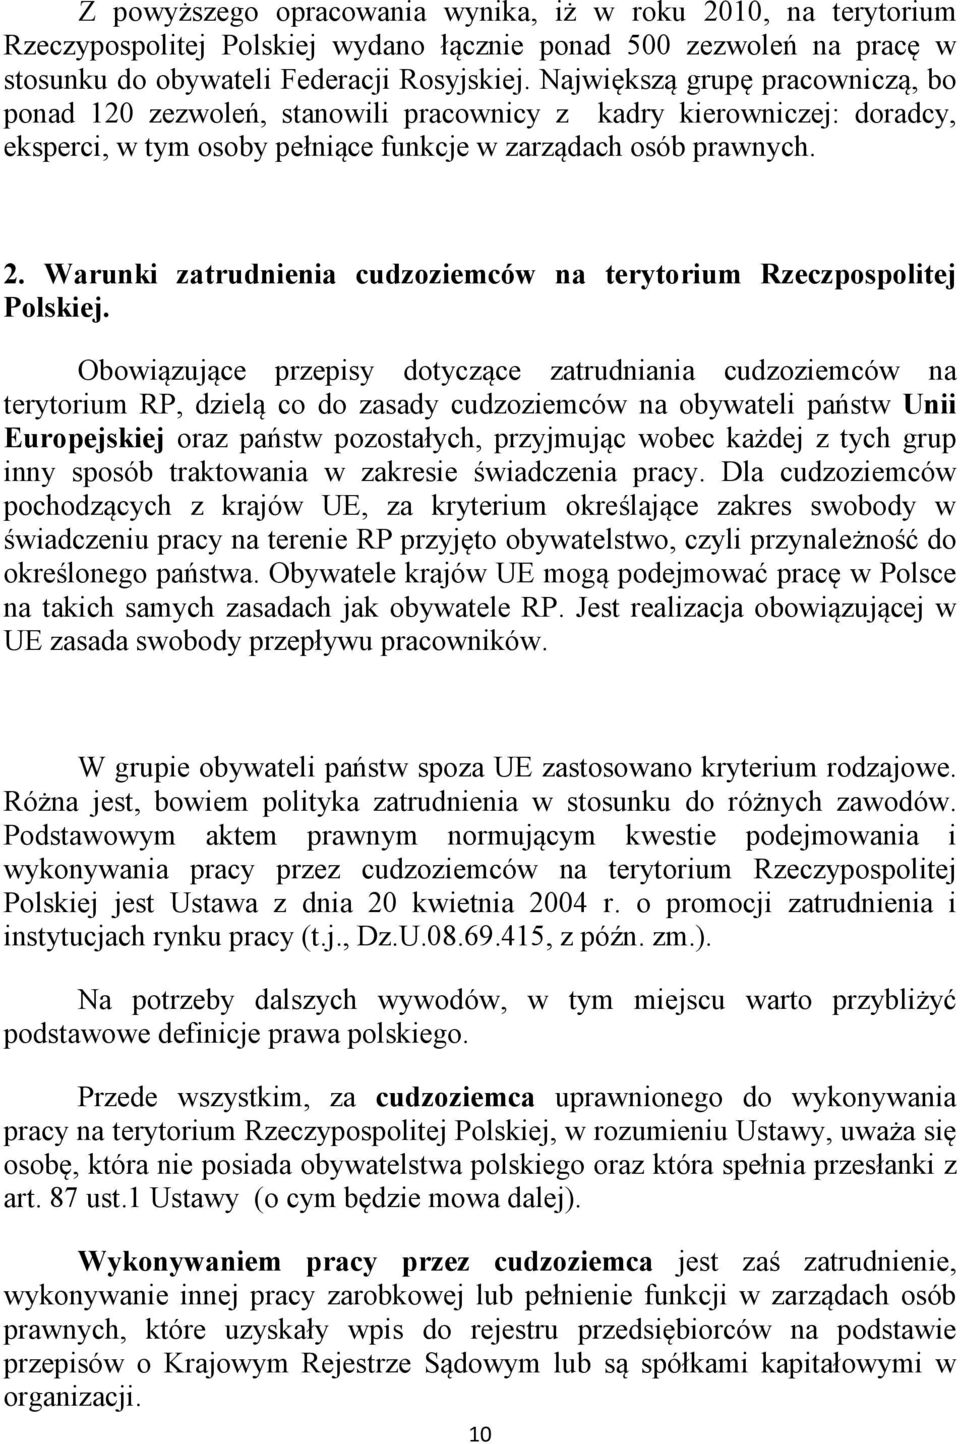 Warunki zatrudnienia cudzoziemców na terytorium Rzeczpospolitej Polskiej.